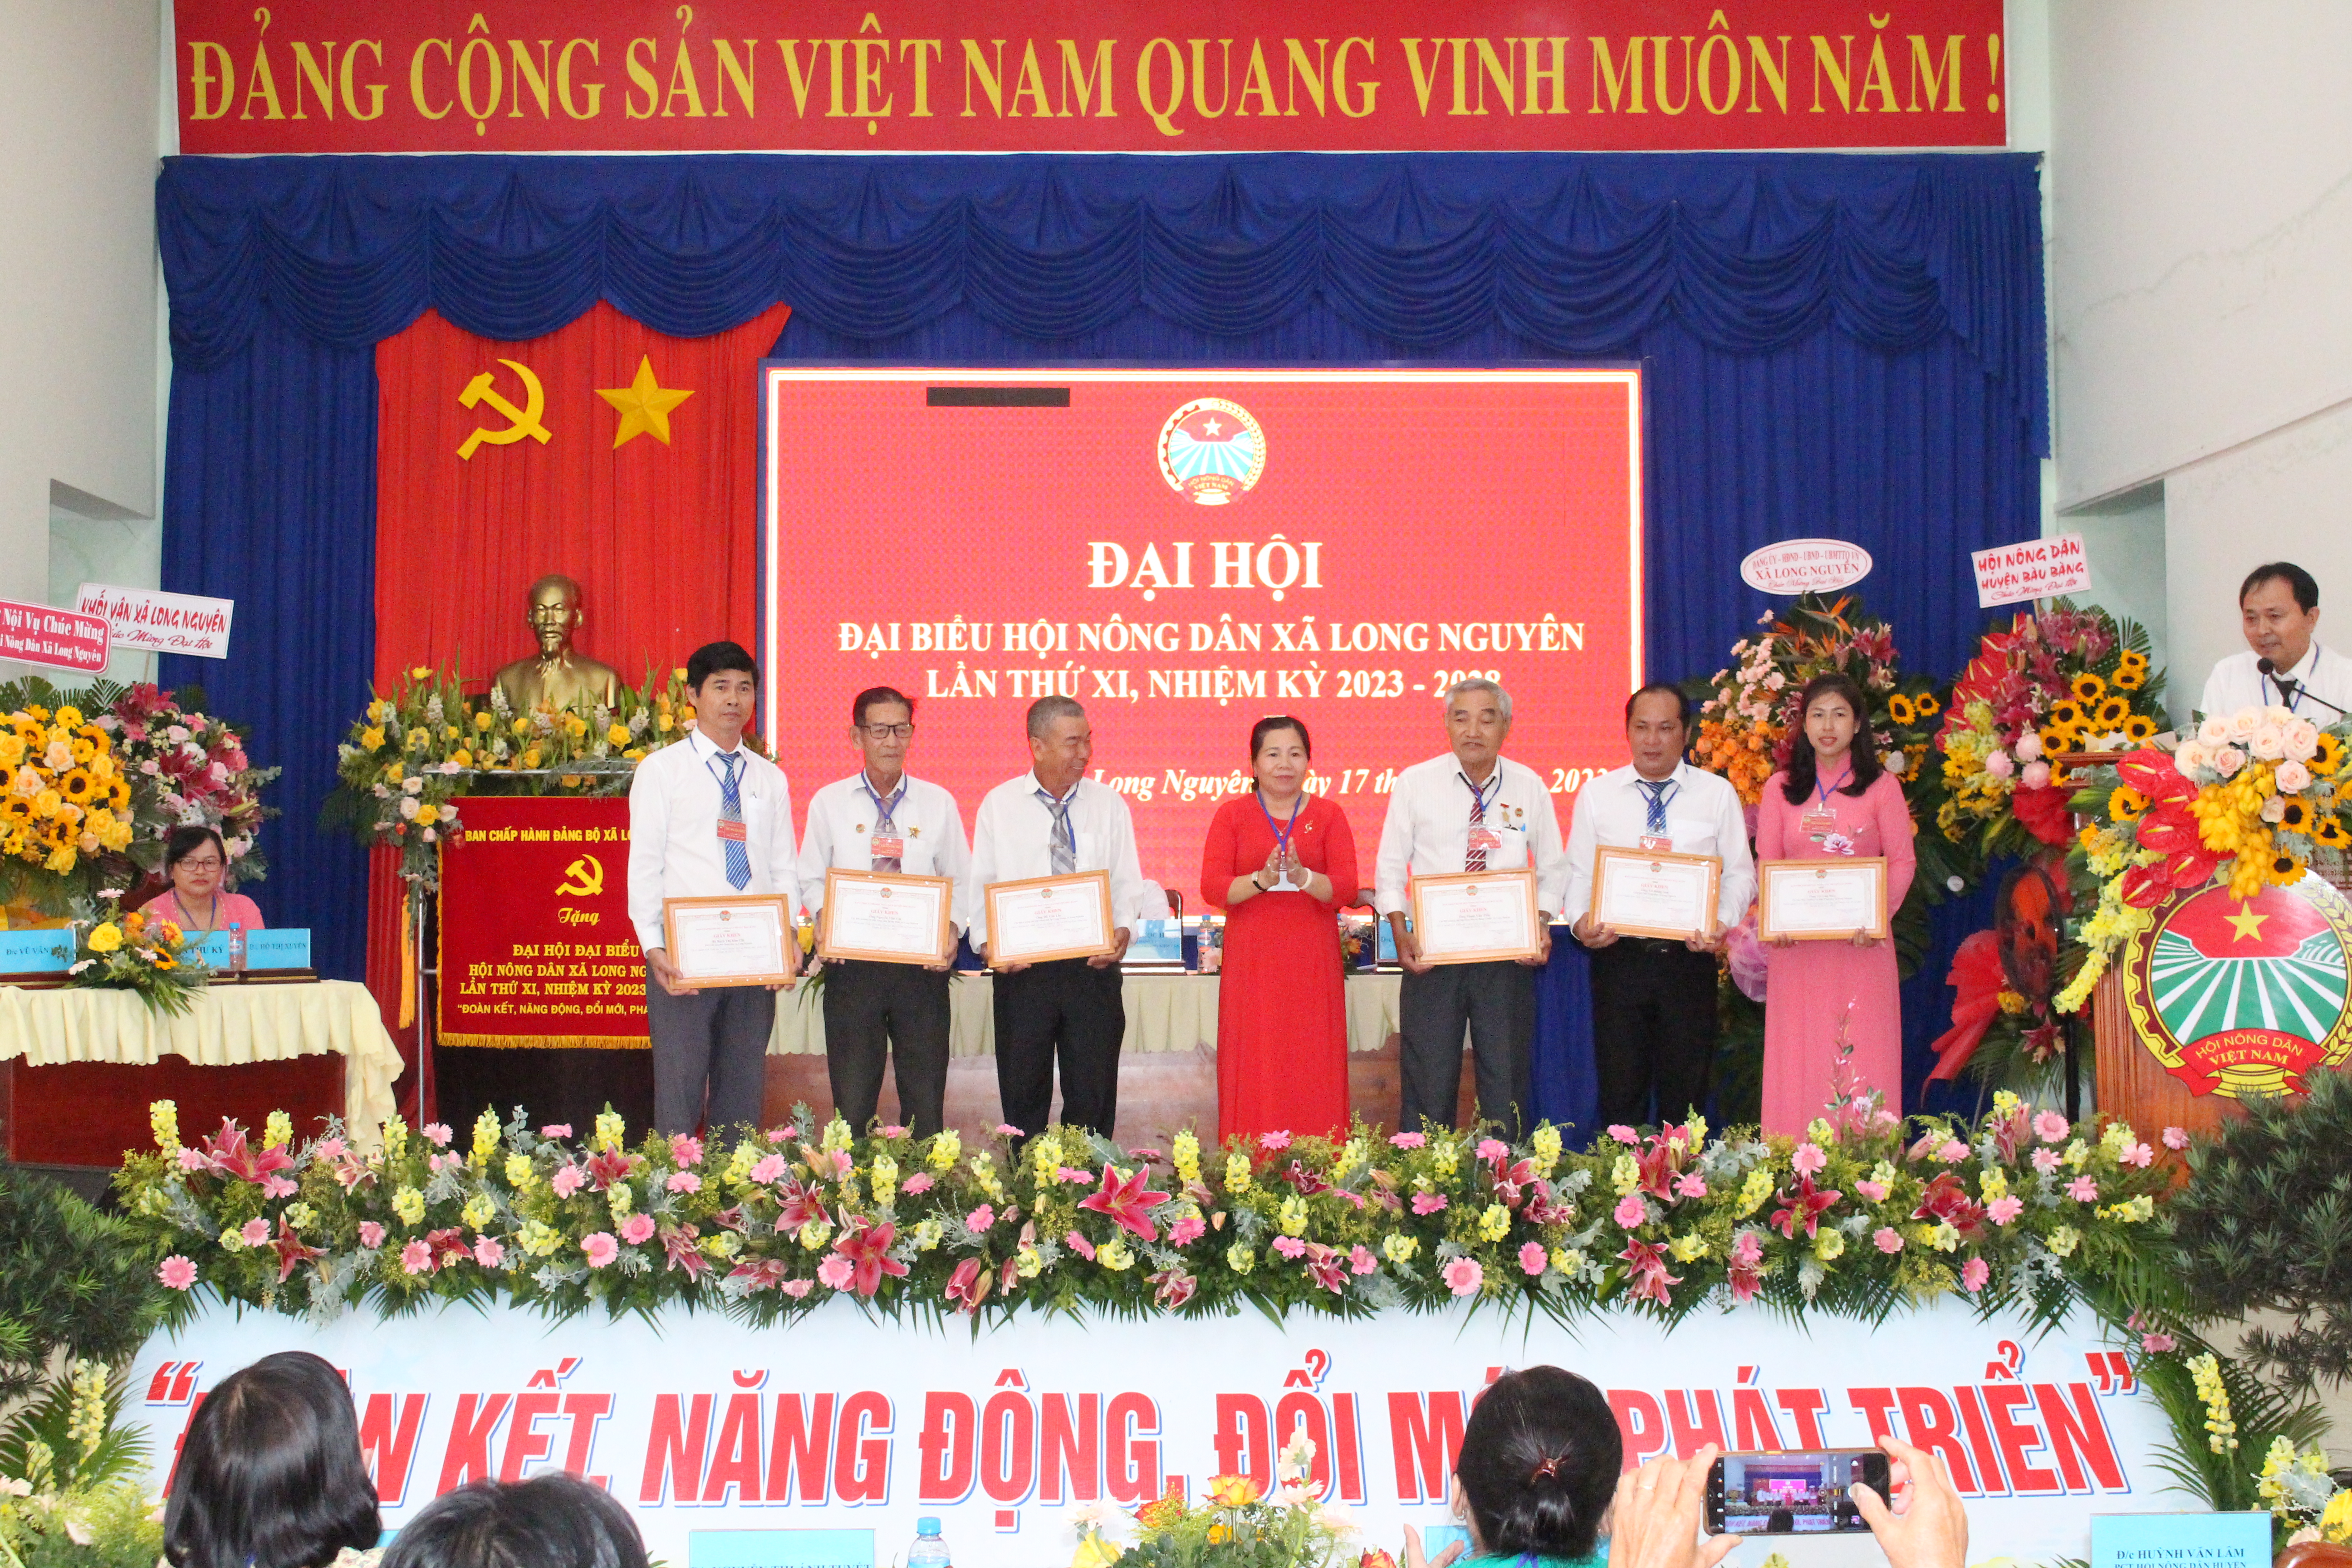 Bà Nguyễn Thị Ánh Tuyết - Chủ tịch Hội Nông dân huyện trao giấy khen cho các cá nhân có thành tích xuất sắc trong phong trào.